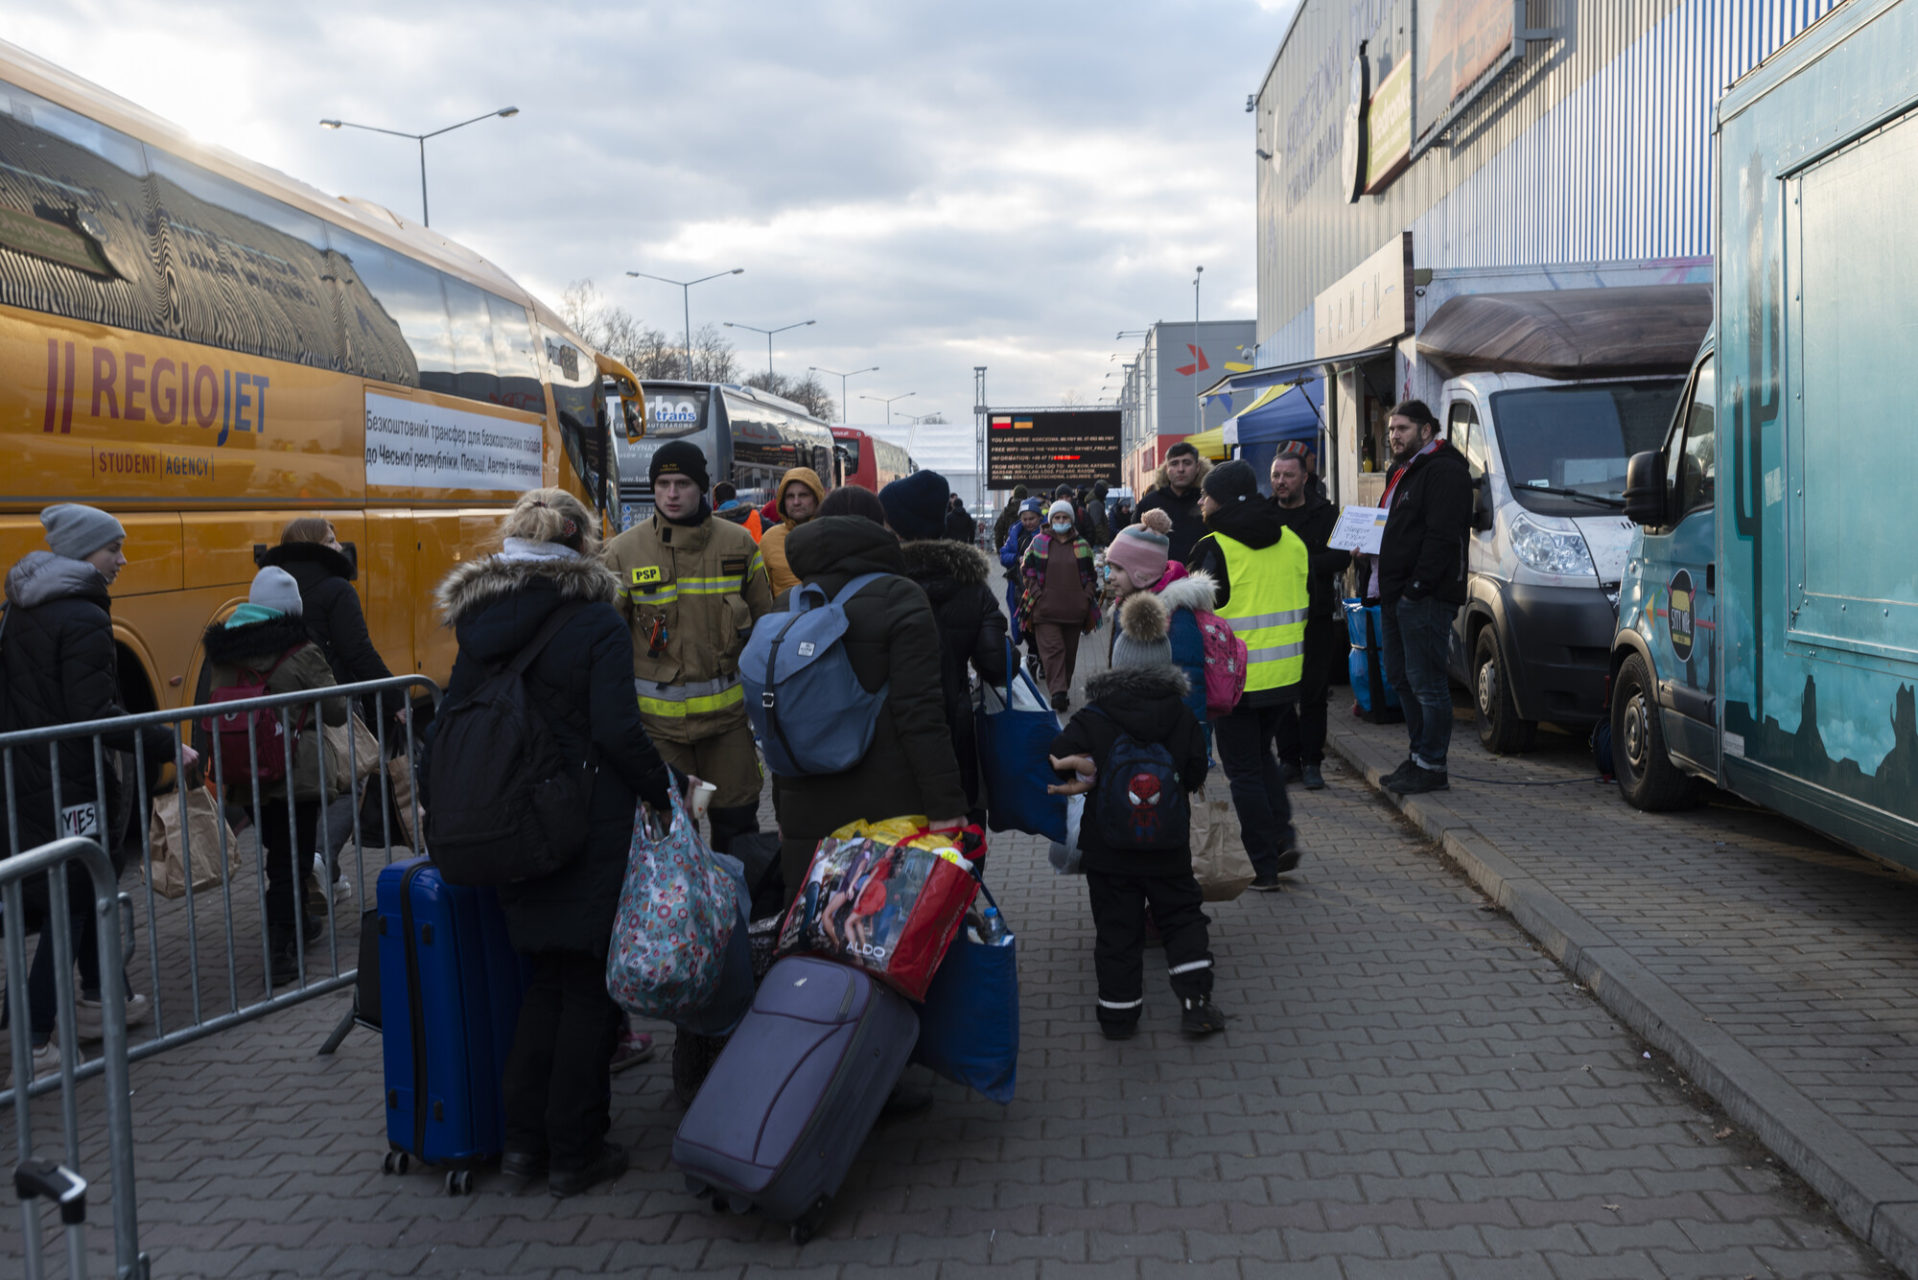 Un'area di sosta per i profughi ucraini al confine polacco. Korscienca, Polonia.